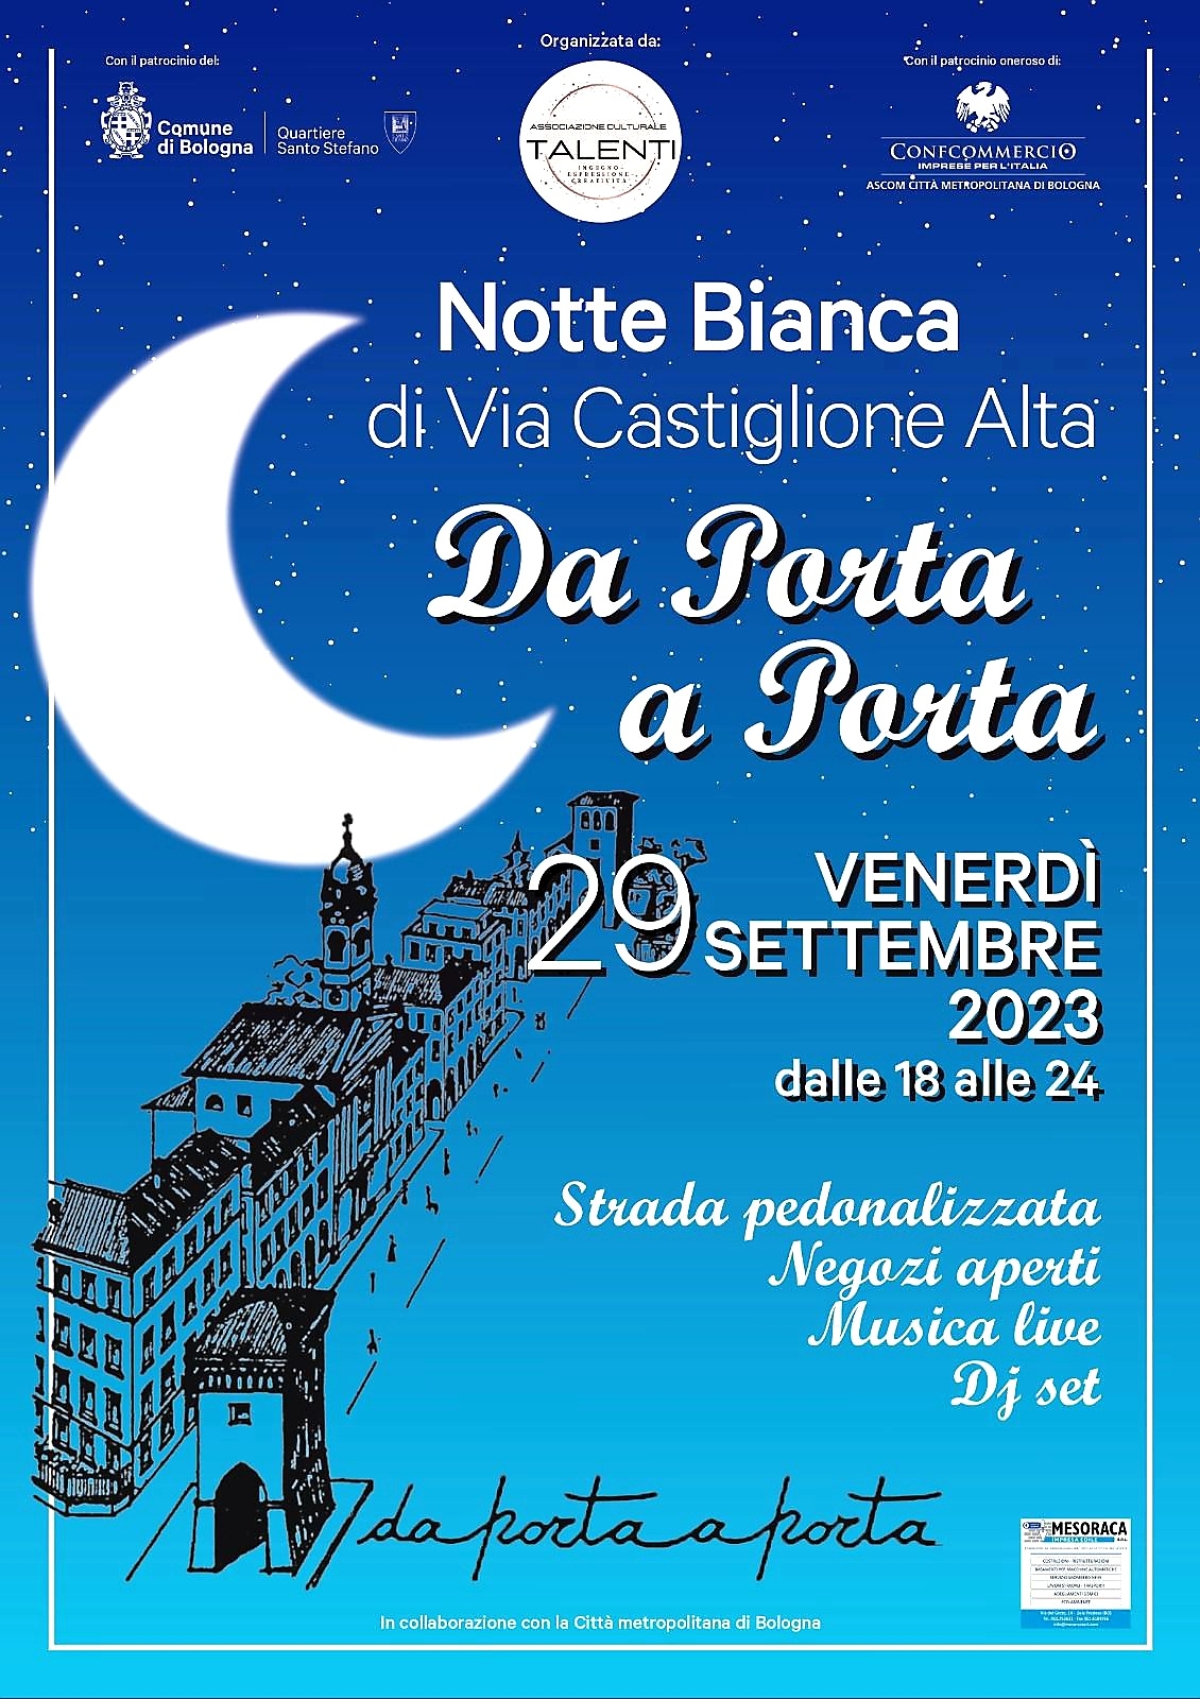 29 Settembre 2023 Notte Bianca di Via Castiglione Alta